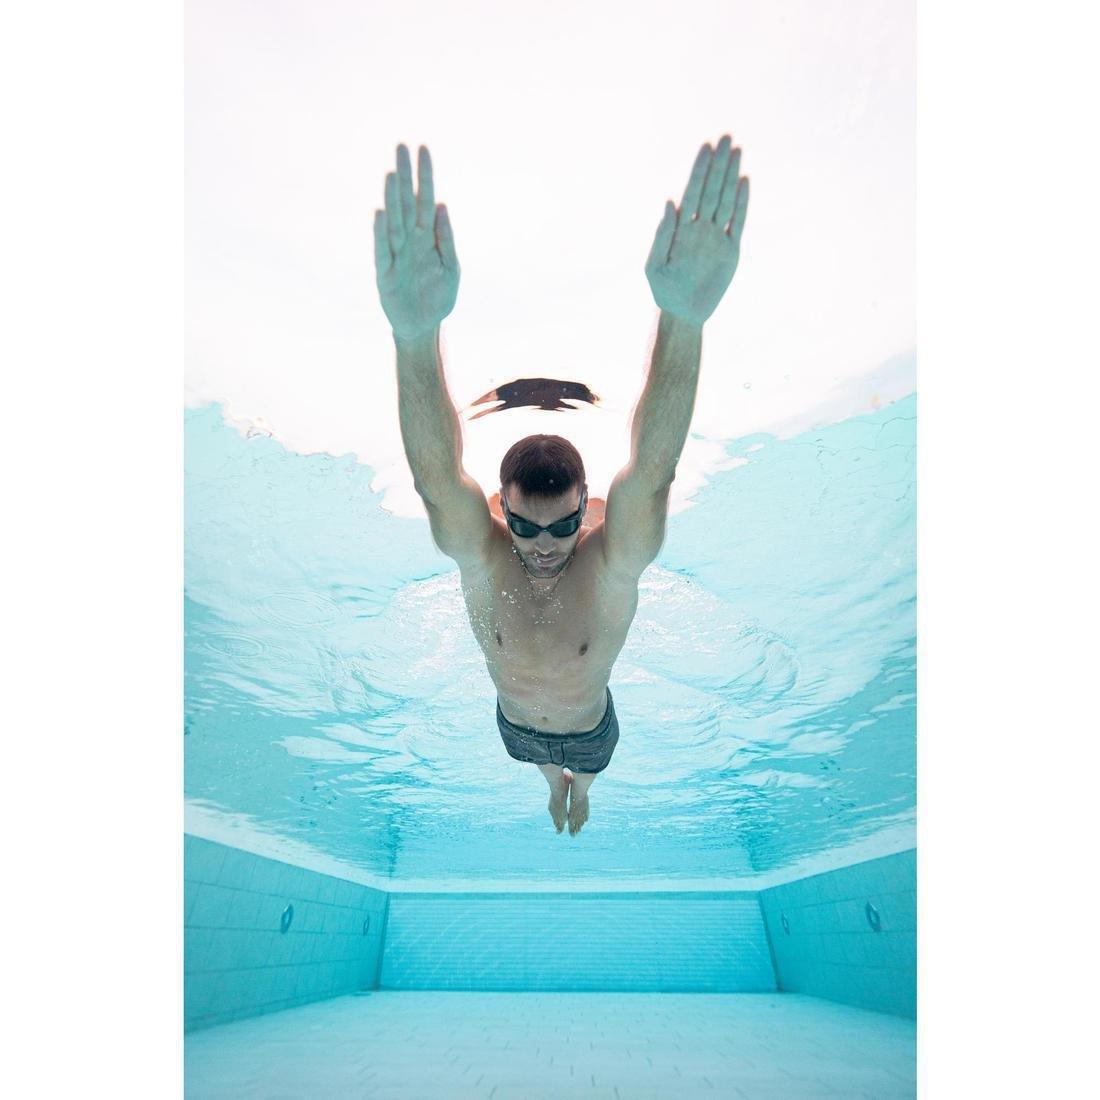 NABAIJI - Swimming Goggles Soft 100, Tinted Lenses, Black